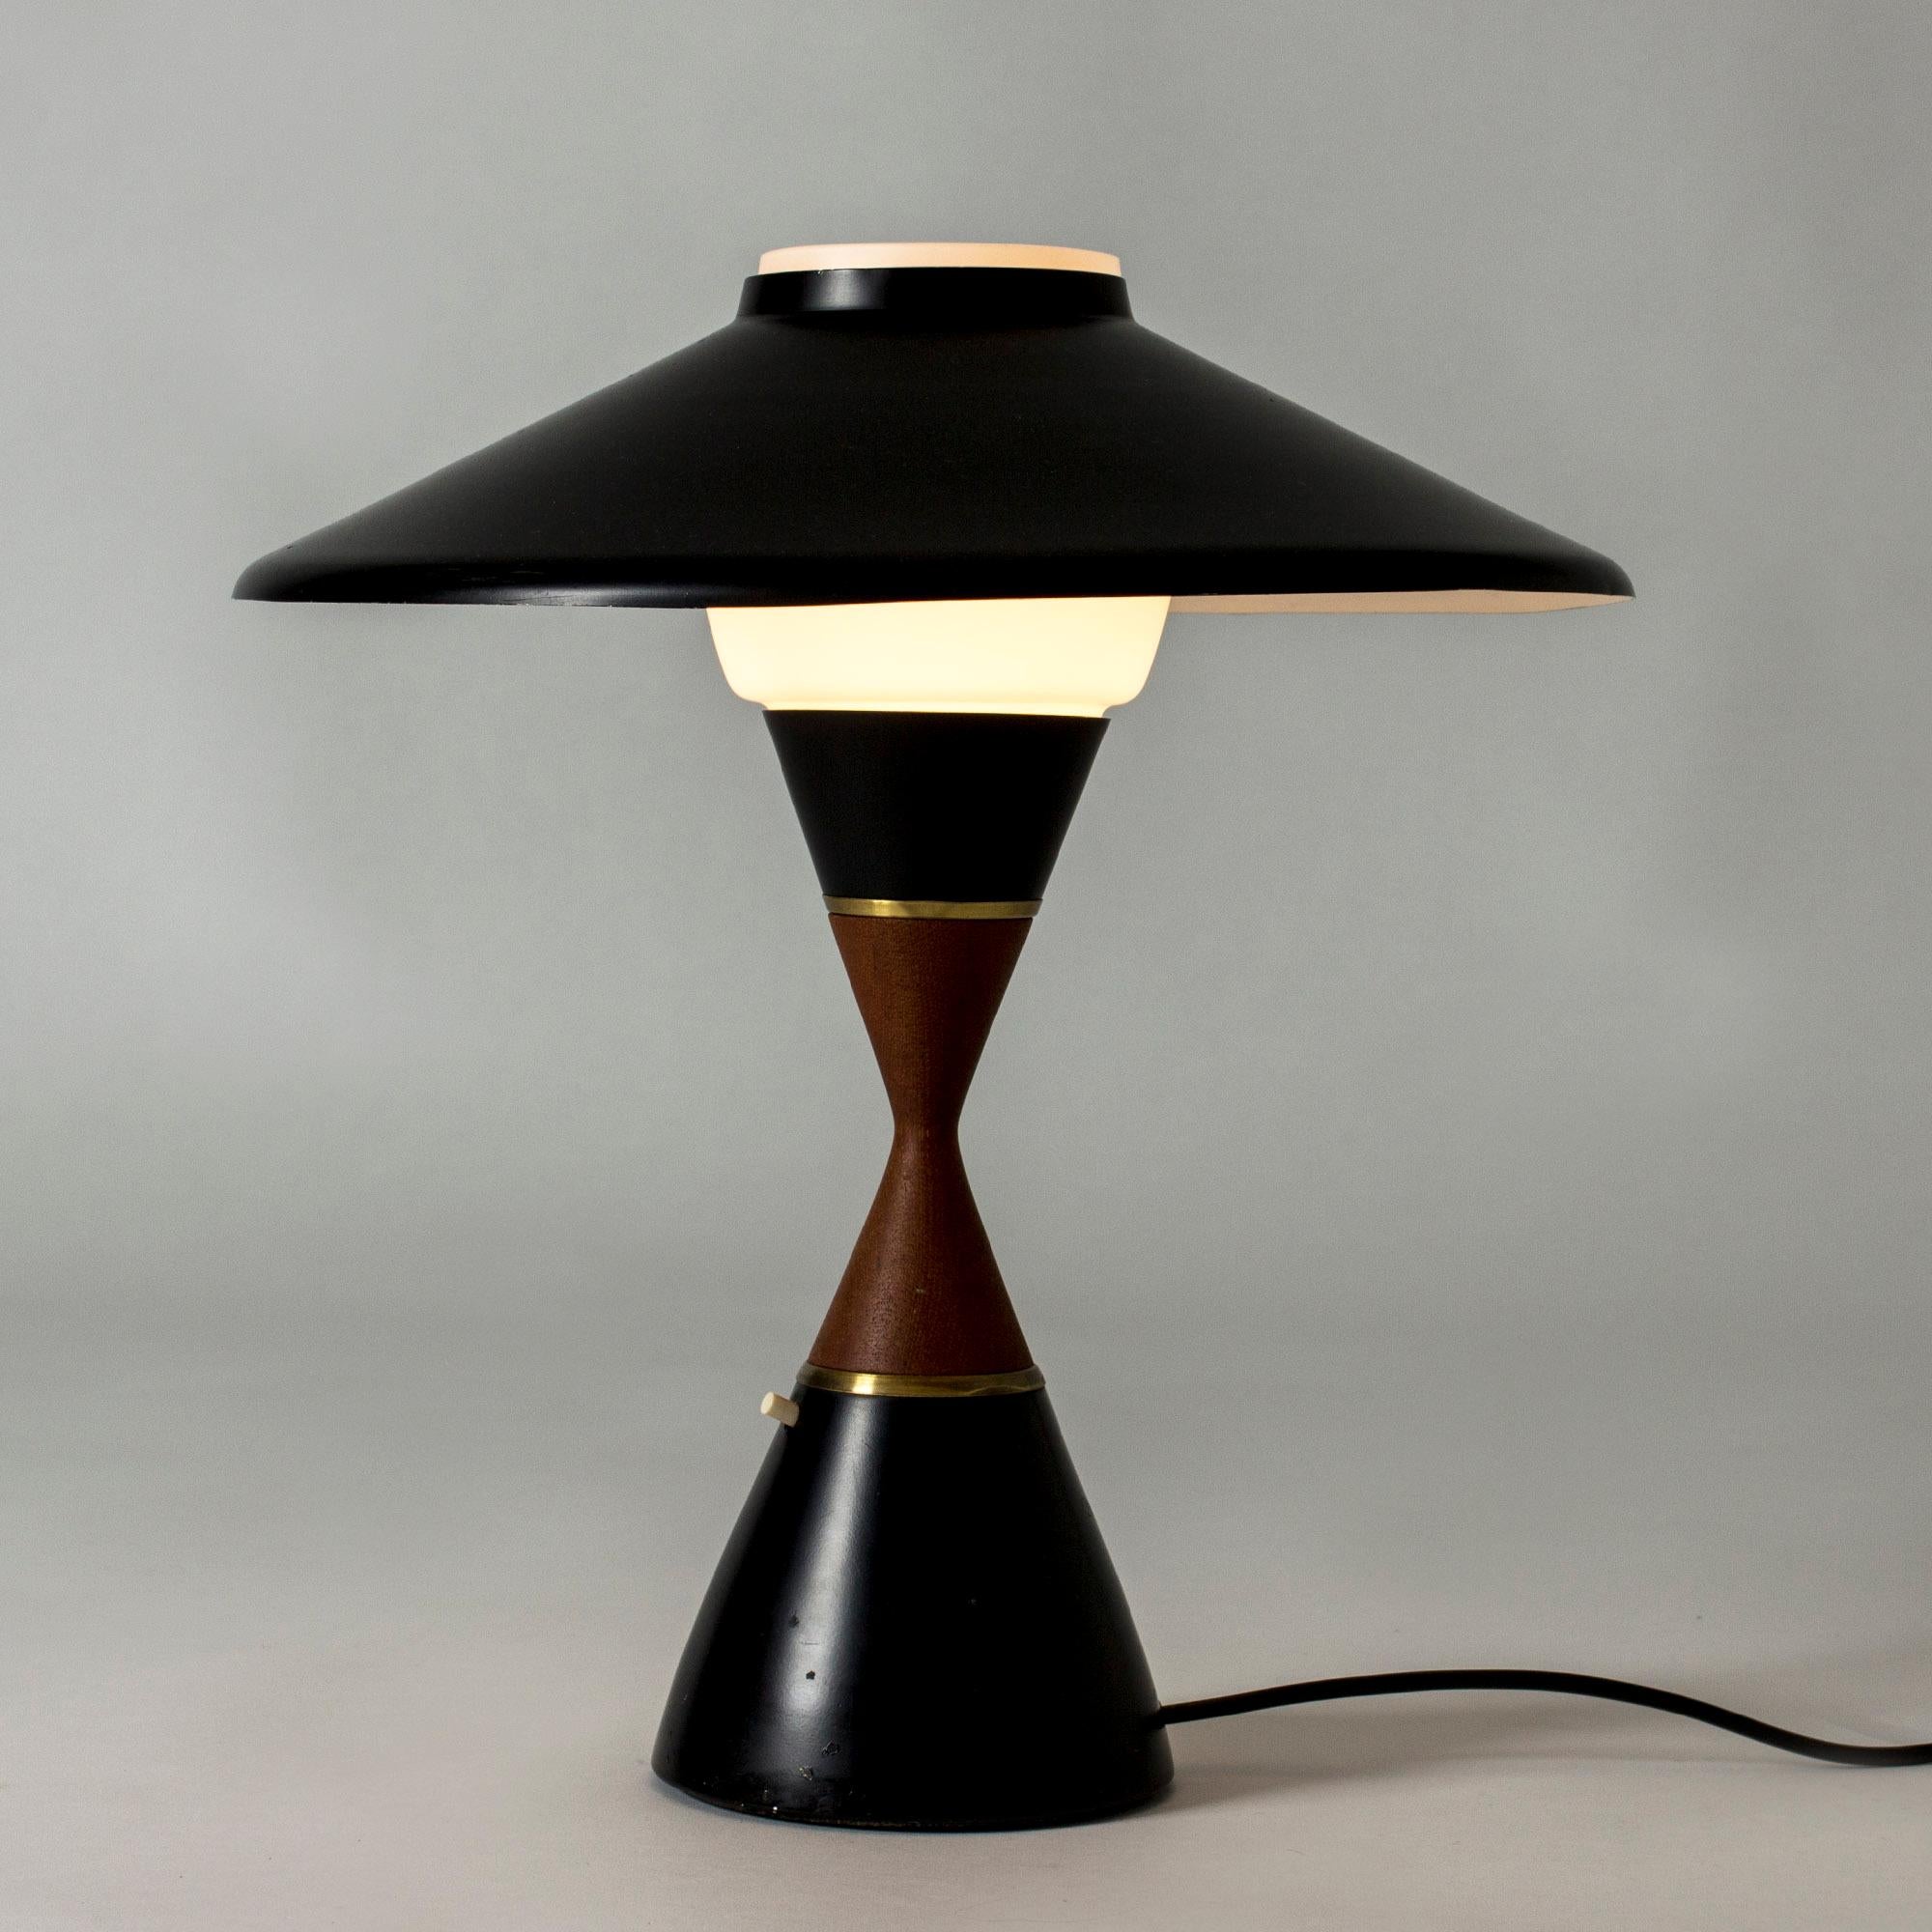 Lampe de table dans un design cool avec des lignes graphiques par Svend Aage Holm Sørensen. Taille en métal laqué noir et teck.